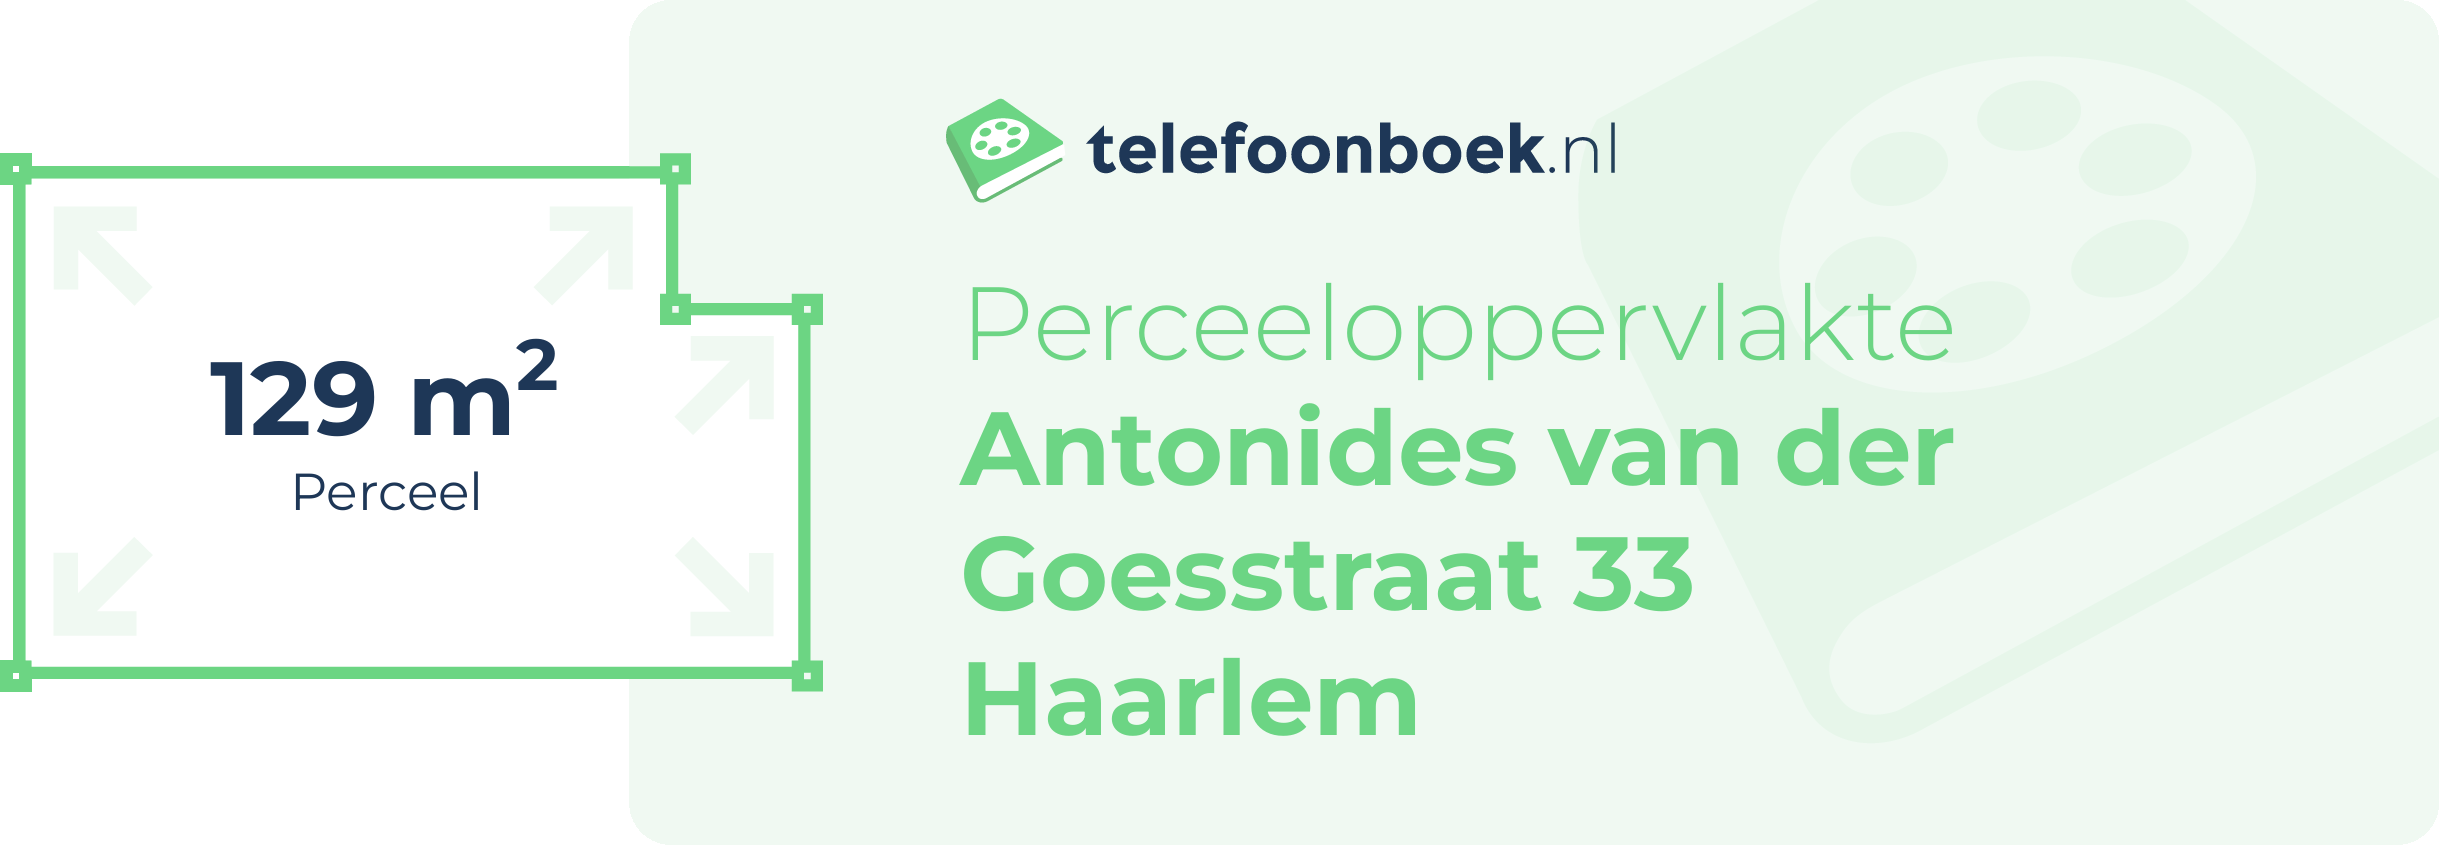 Perceeloppervlakte Antonides Van Der Goesstraat 33 Haarlem